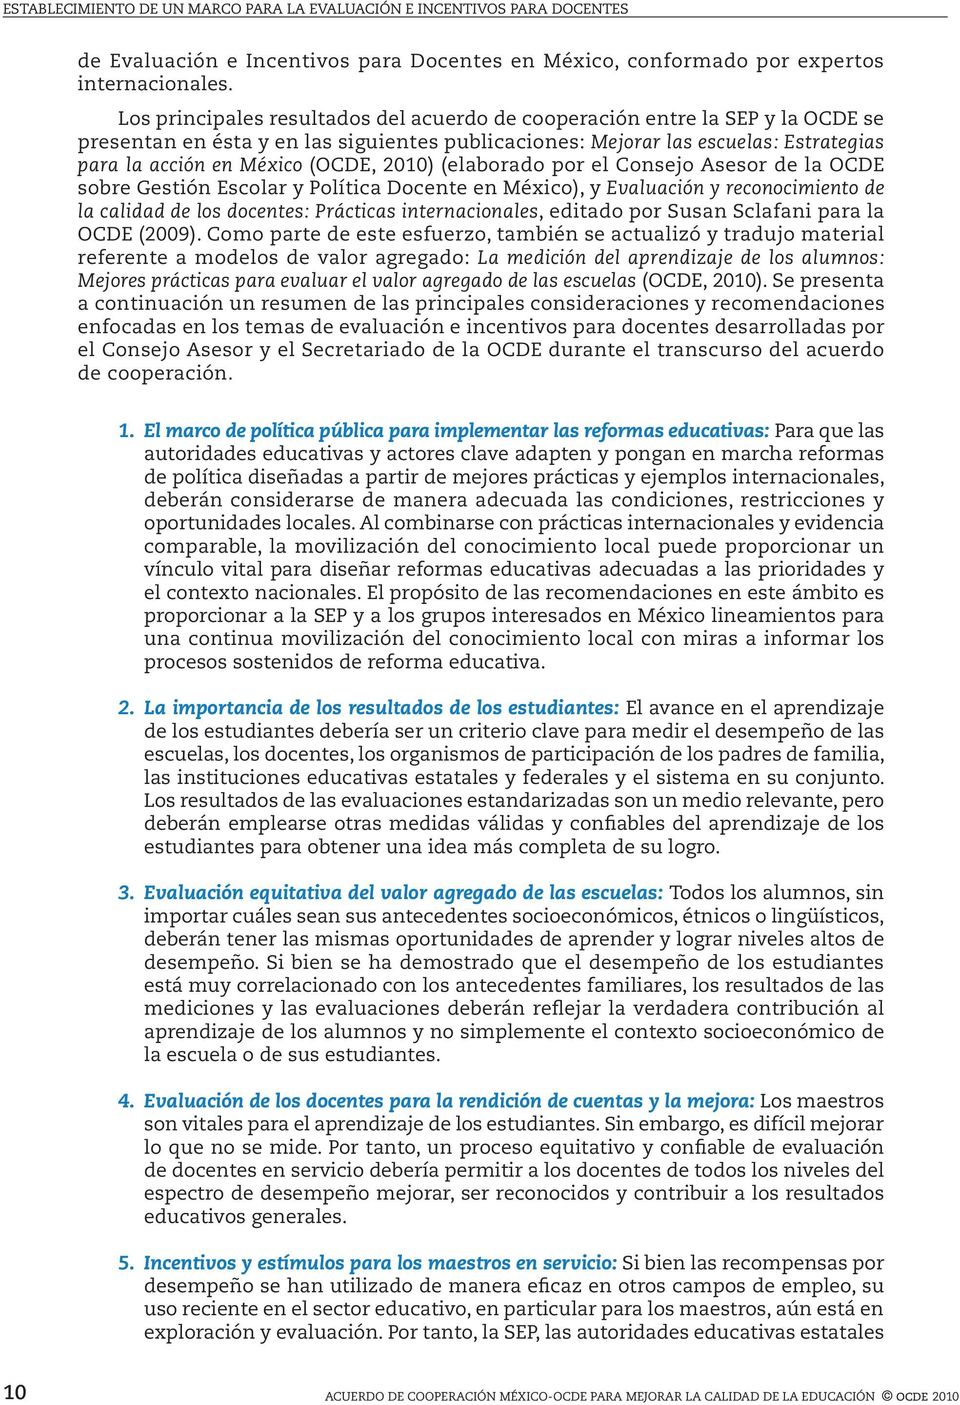 2010) (elaborado por el Consejo Asesor de la OCDE sobre Gestión Escolar y Política Docente en México), y Evaluación y reconocimiento de la calidad de los docentes: Prácticas internacionales, editado